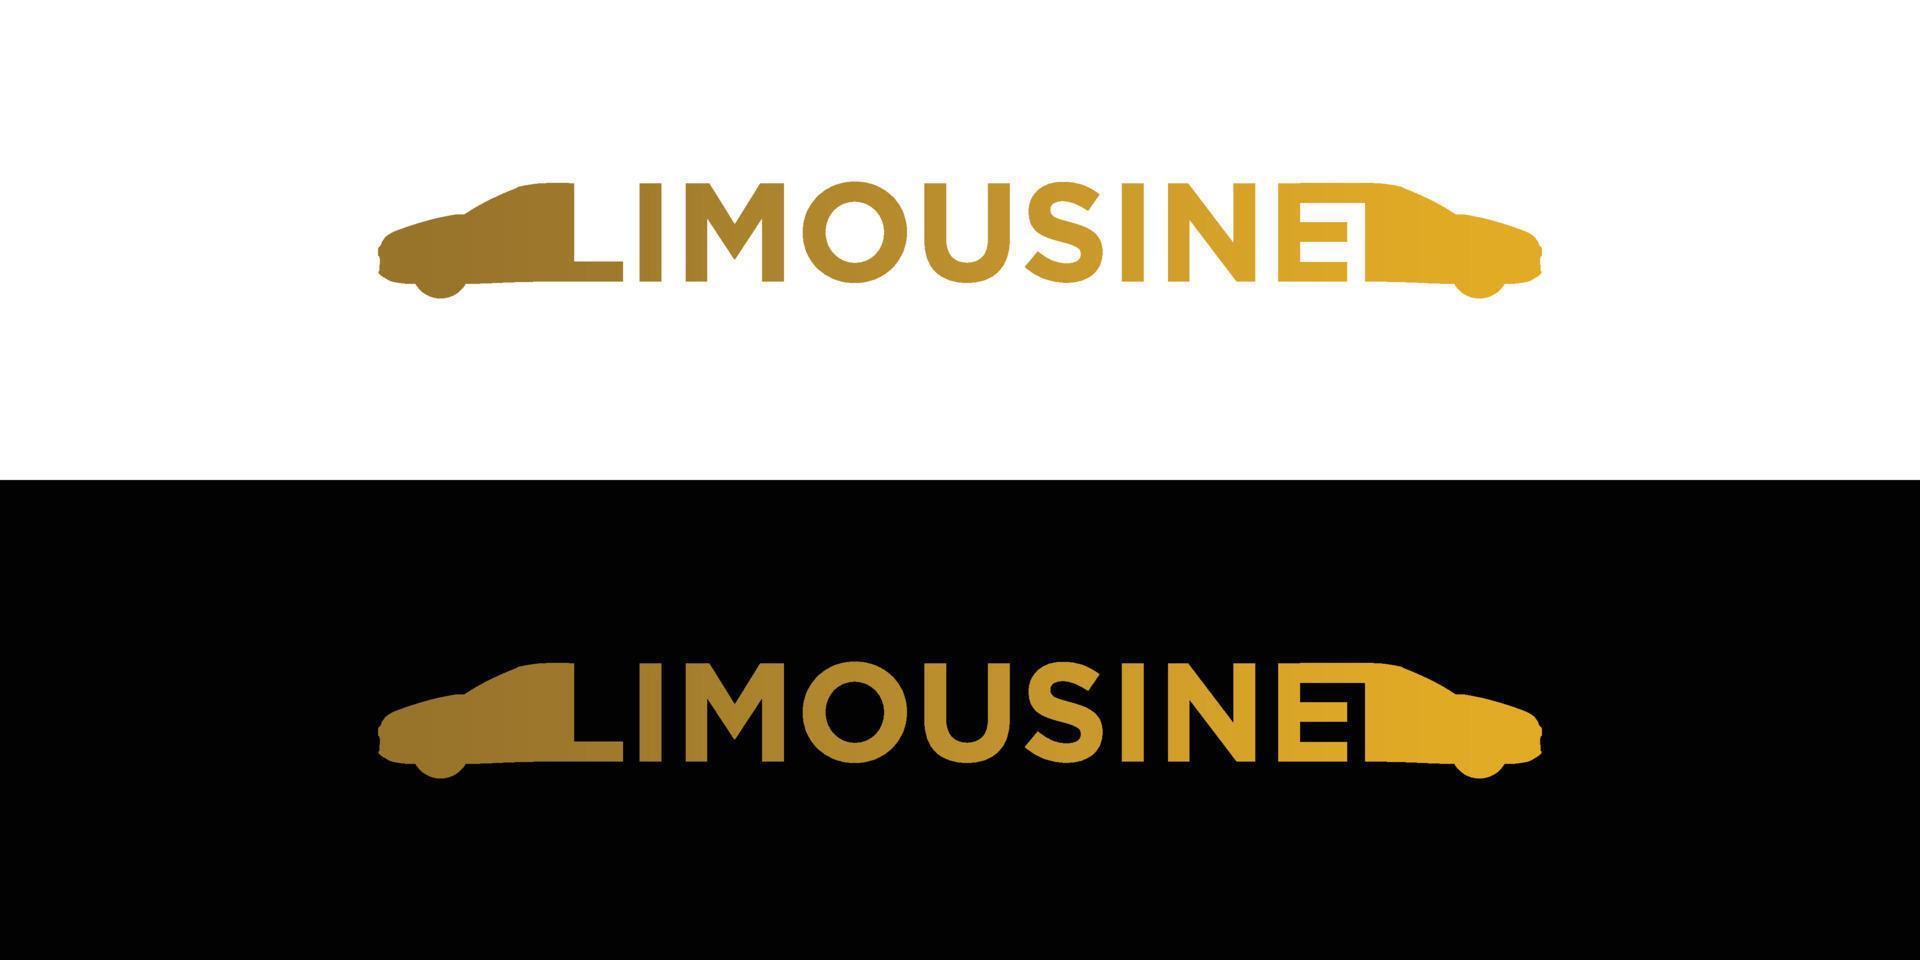 création de logo d'illustration de voiture limousine unique et moderne vecteur